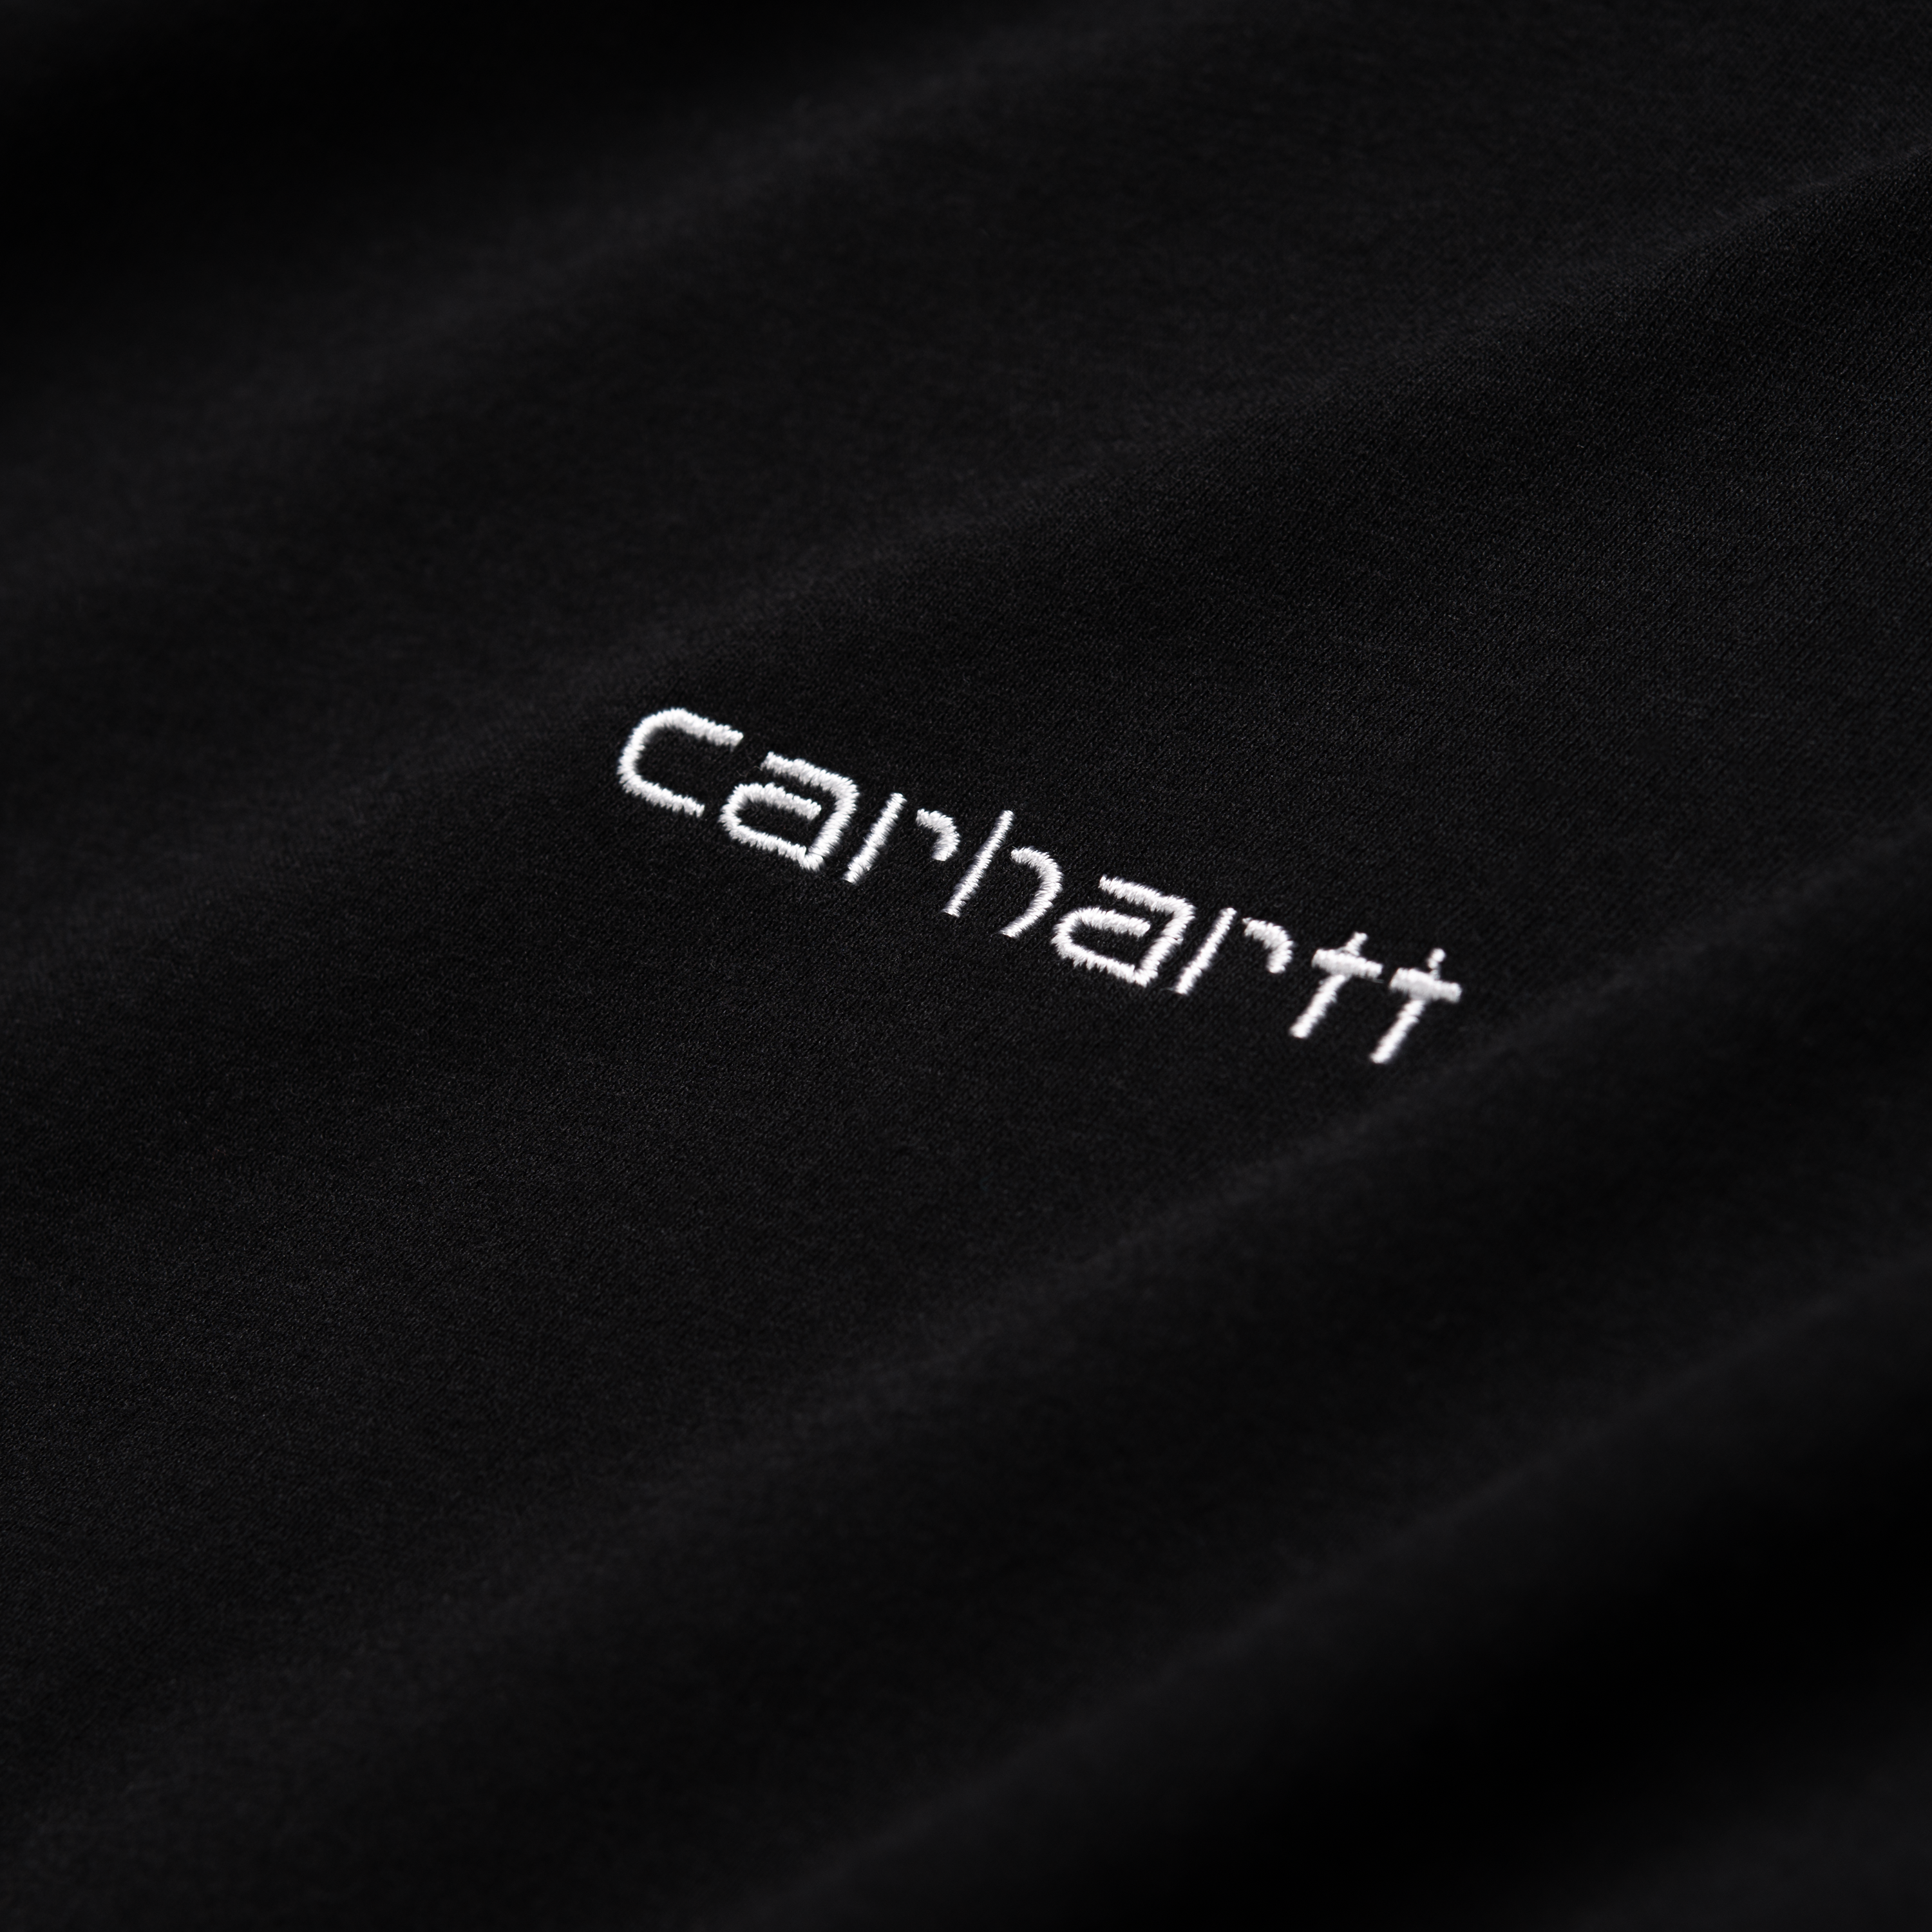 Carhartt S/S Script T-shirt, Sort/Hvid, M